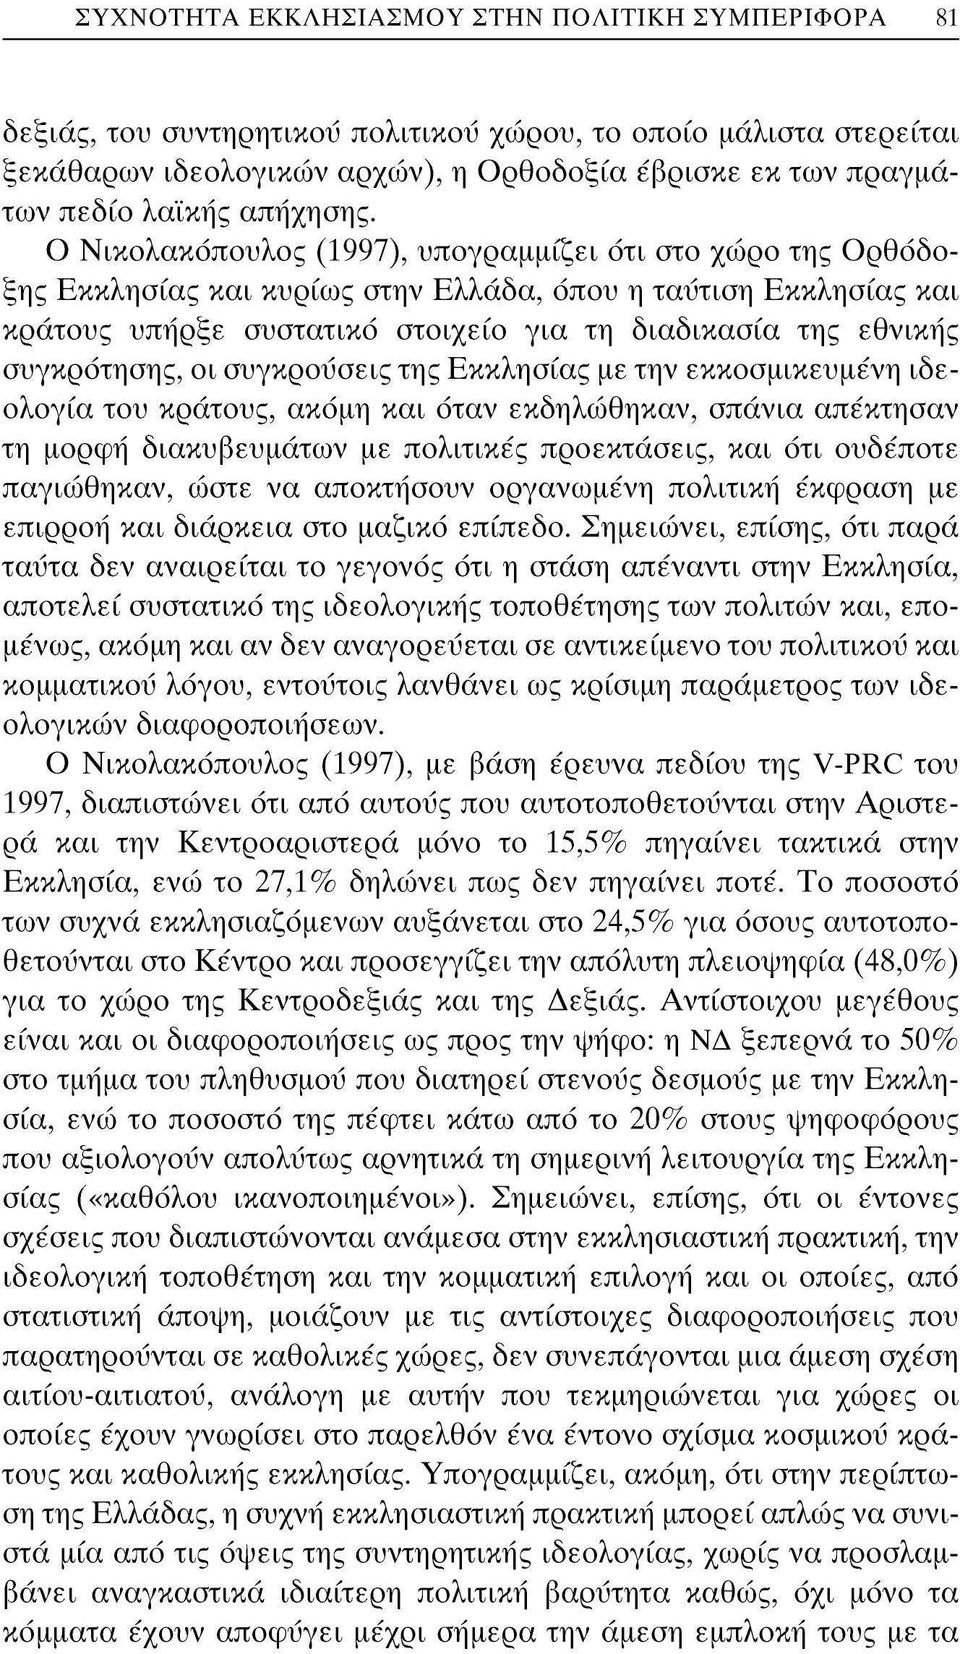 Ο Νικολακόπουλος (1997), υπογραμμίζει ότι στο χώρο της Ορθόδοξης Εκκλησίας και κυρίως στην Ελλάδα, όπου η ταύτιση Εκκλησίας και κράτους υπήρξε συστατικό στοιχείο για τη διαδικασία της εθνικής